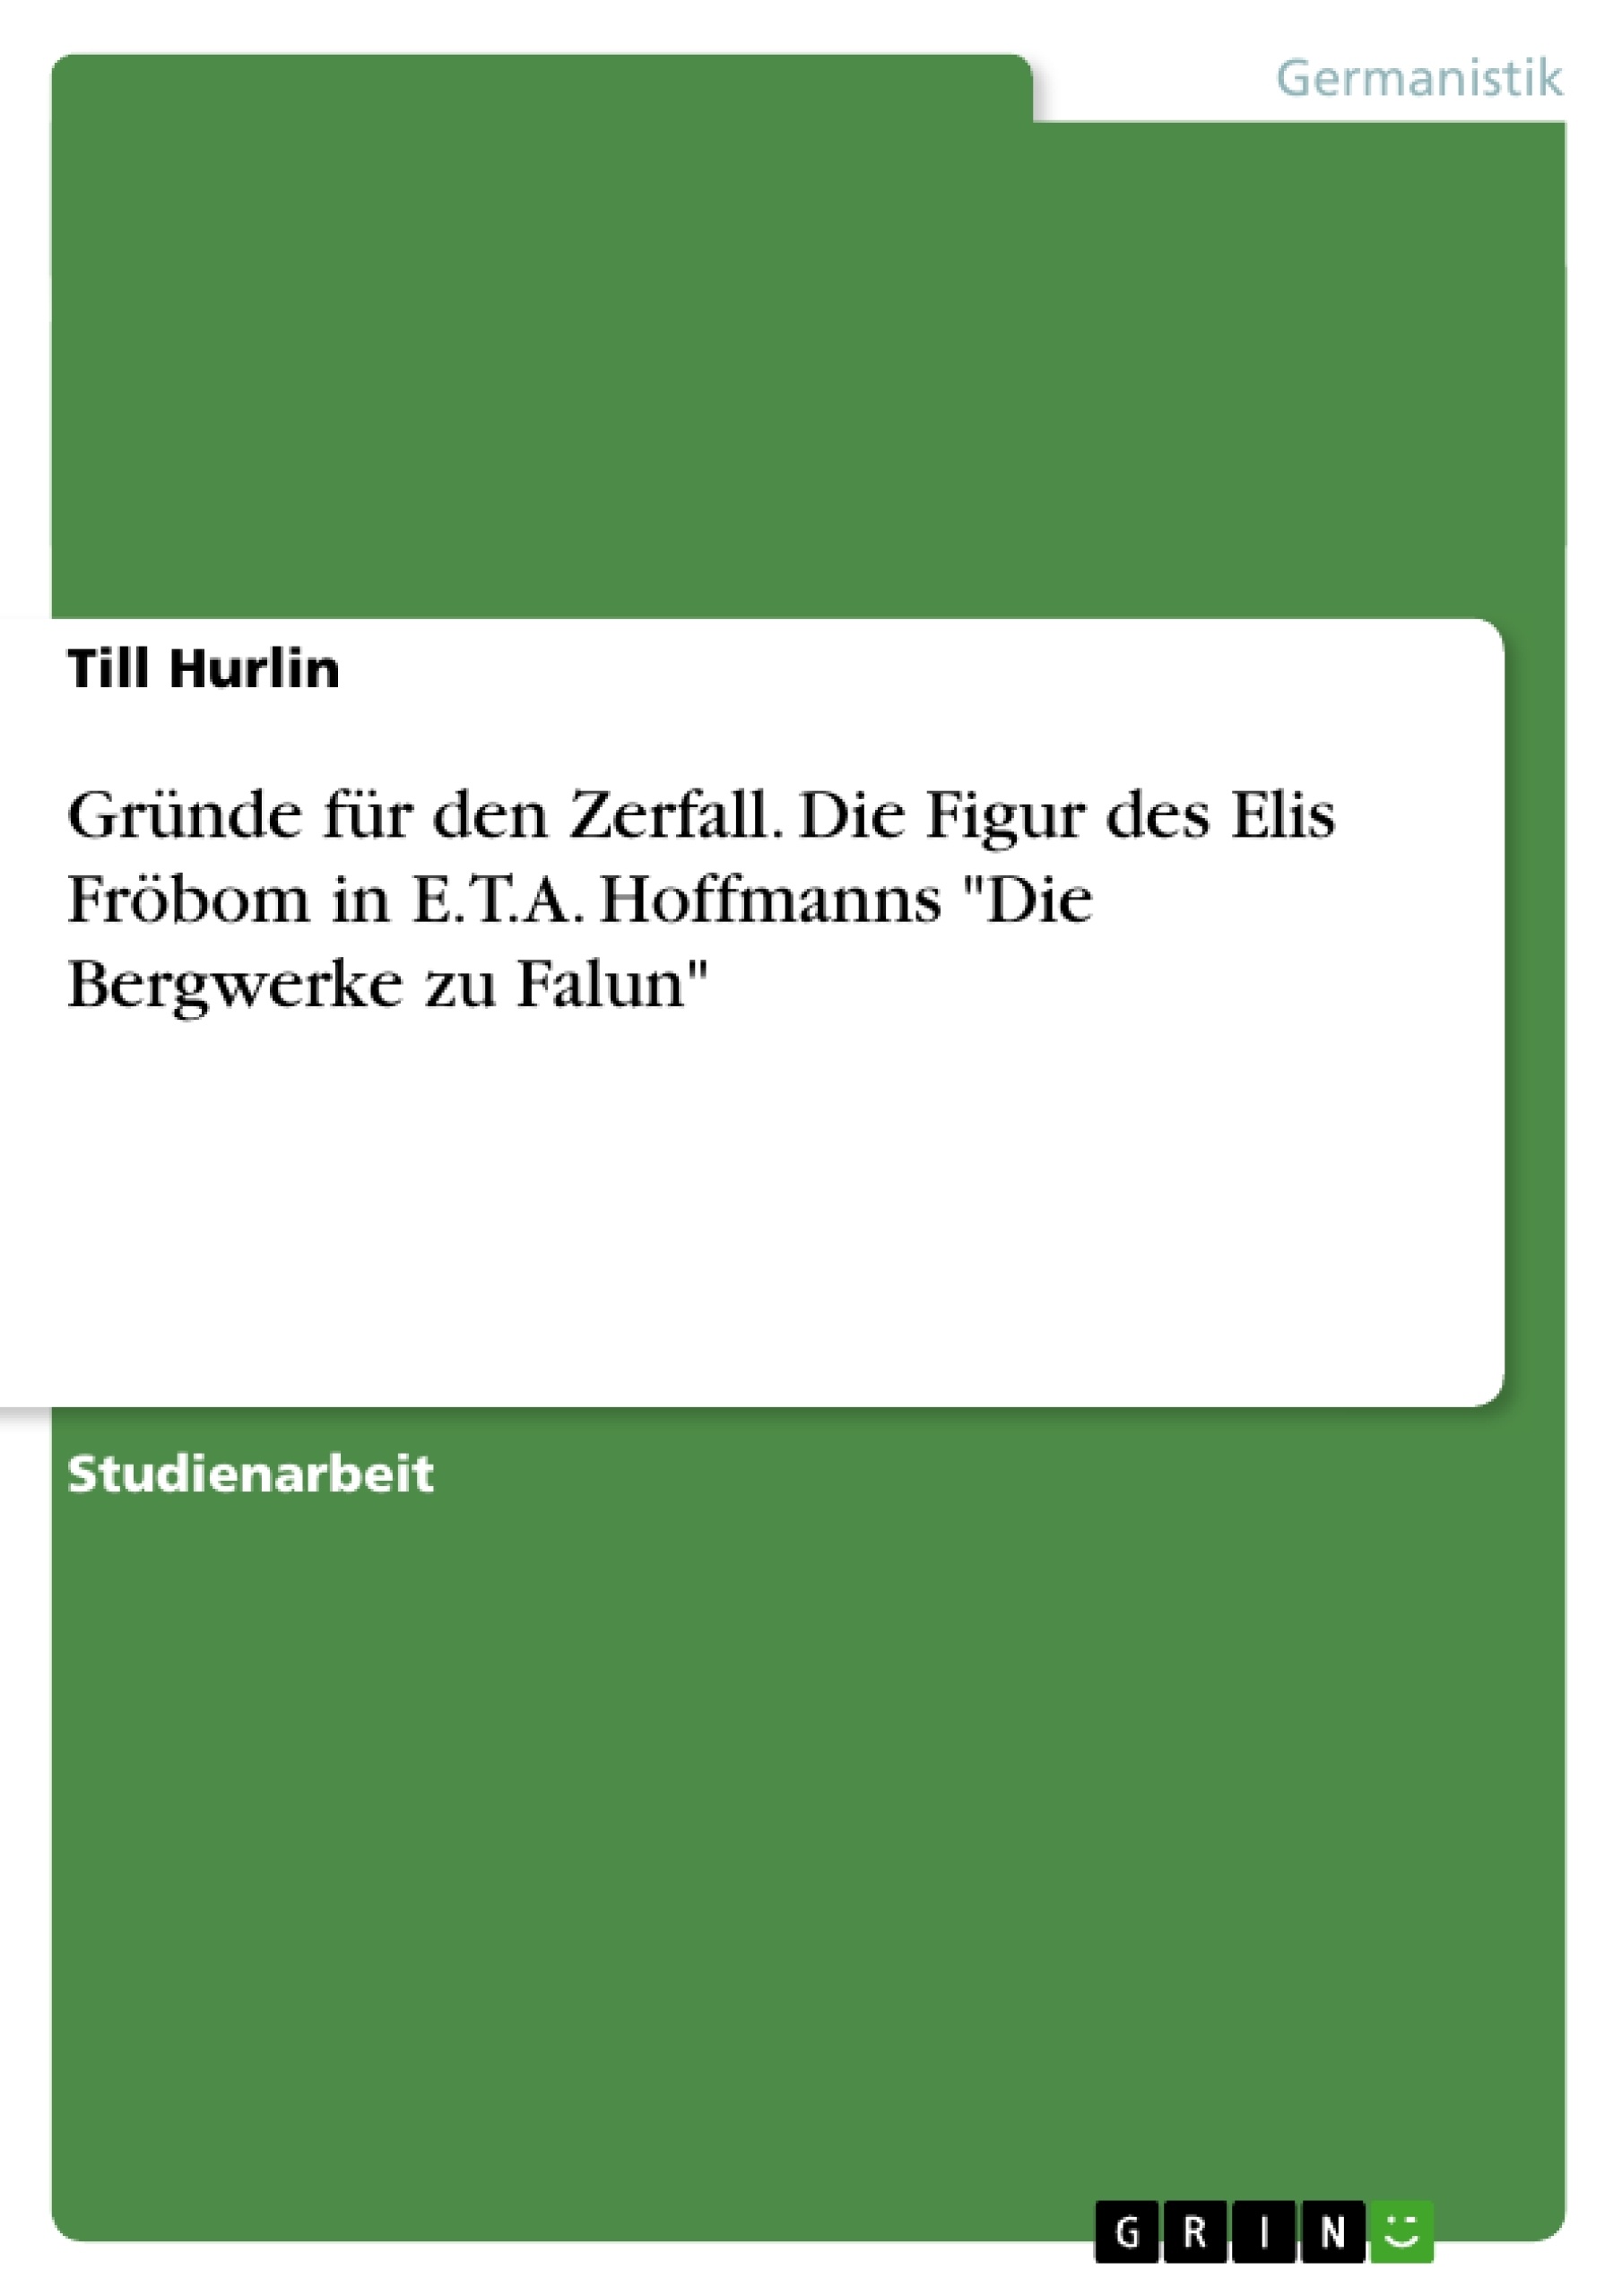 Título: Gründe für den Zerfall. Die Figur des Elis Fröbom in E.T.A. Hoffmanns "Die Bergwerke zu Falun"